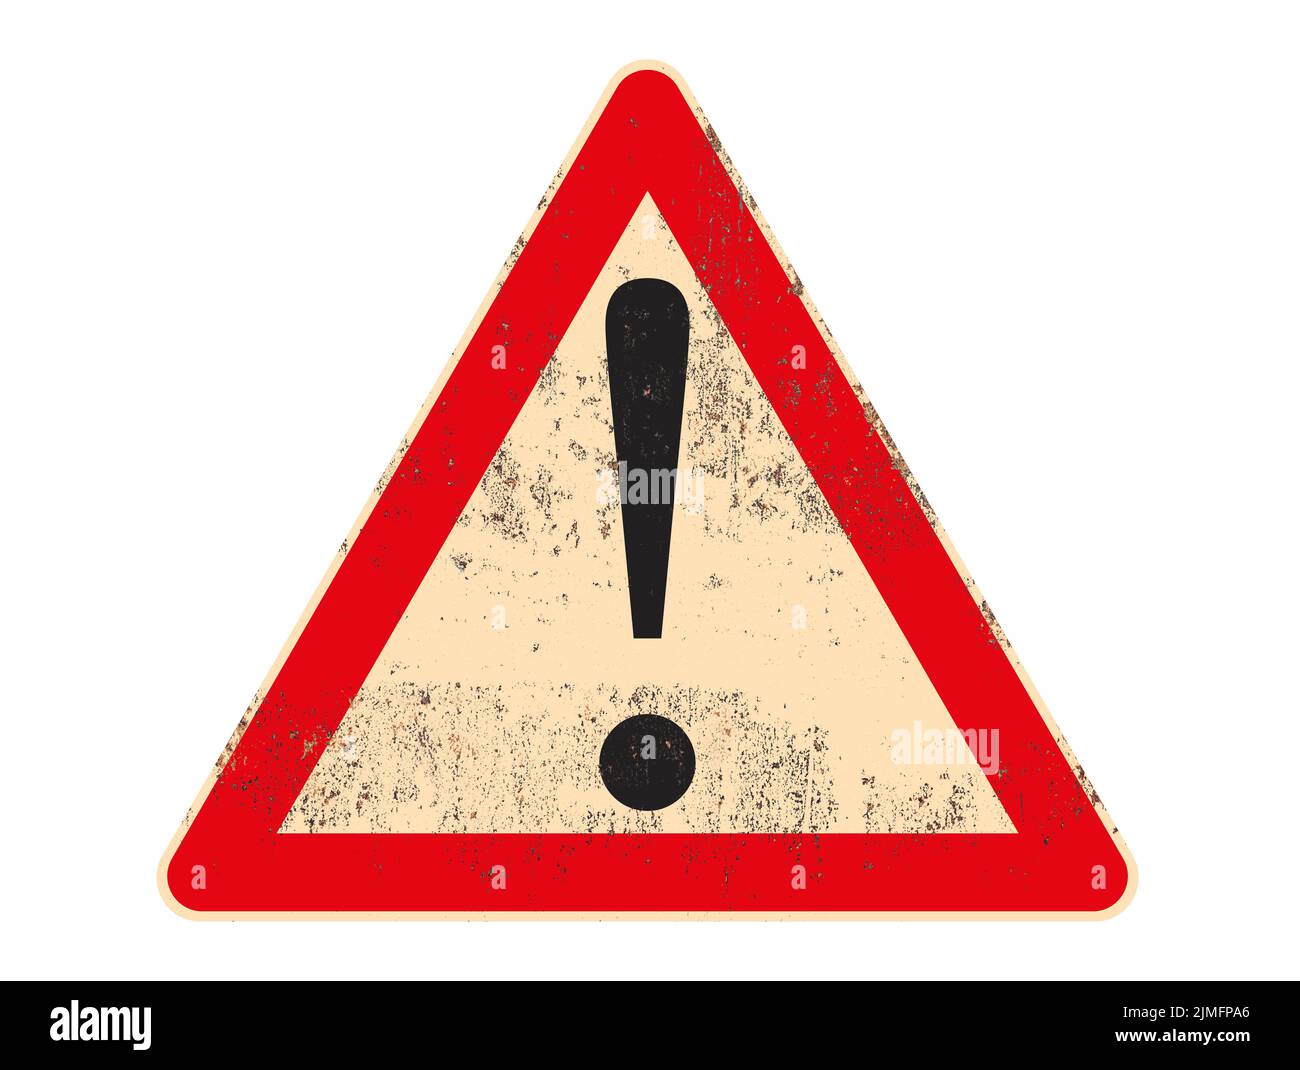 Panneau de signalisation symbole d'avertissement sur panneau métallique rouillé et grundy isolé sur fond blanc. Illustration de haute qualité Banque D'Images